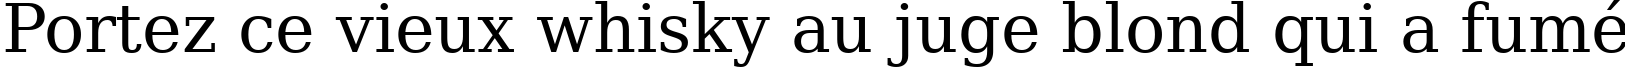 Пример написания шрифтом DejaVu Serif текста на французском